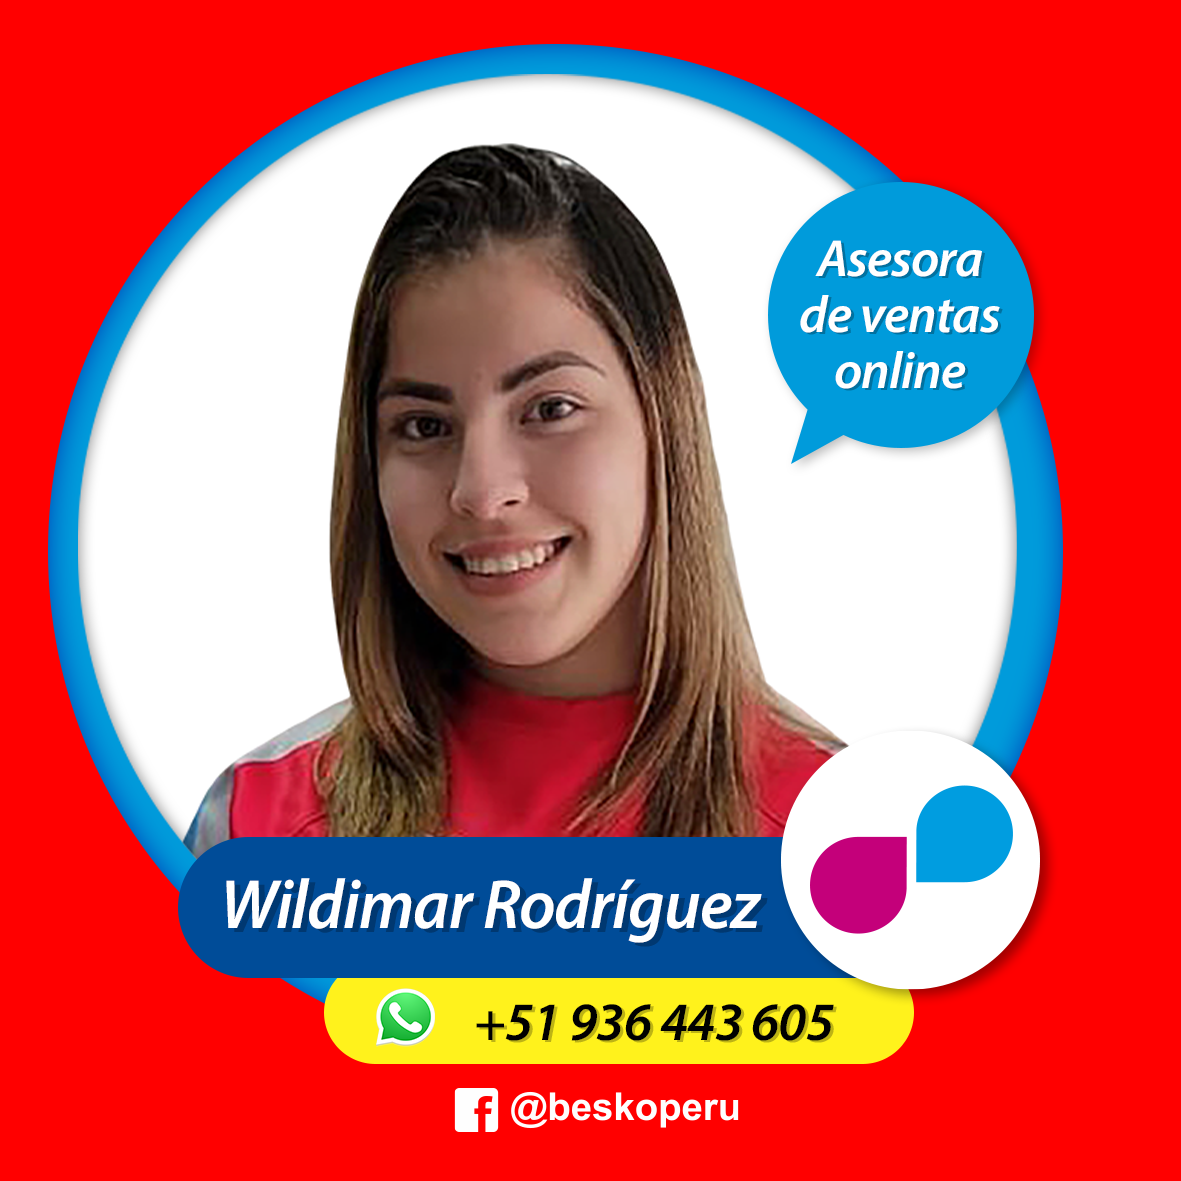 Wildimar Rodríguez